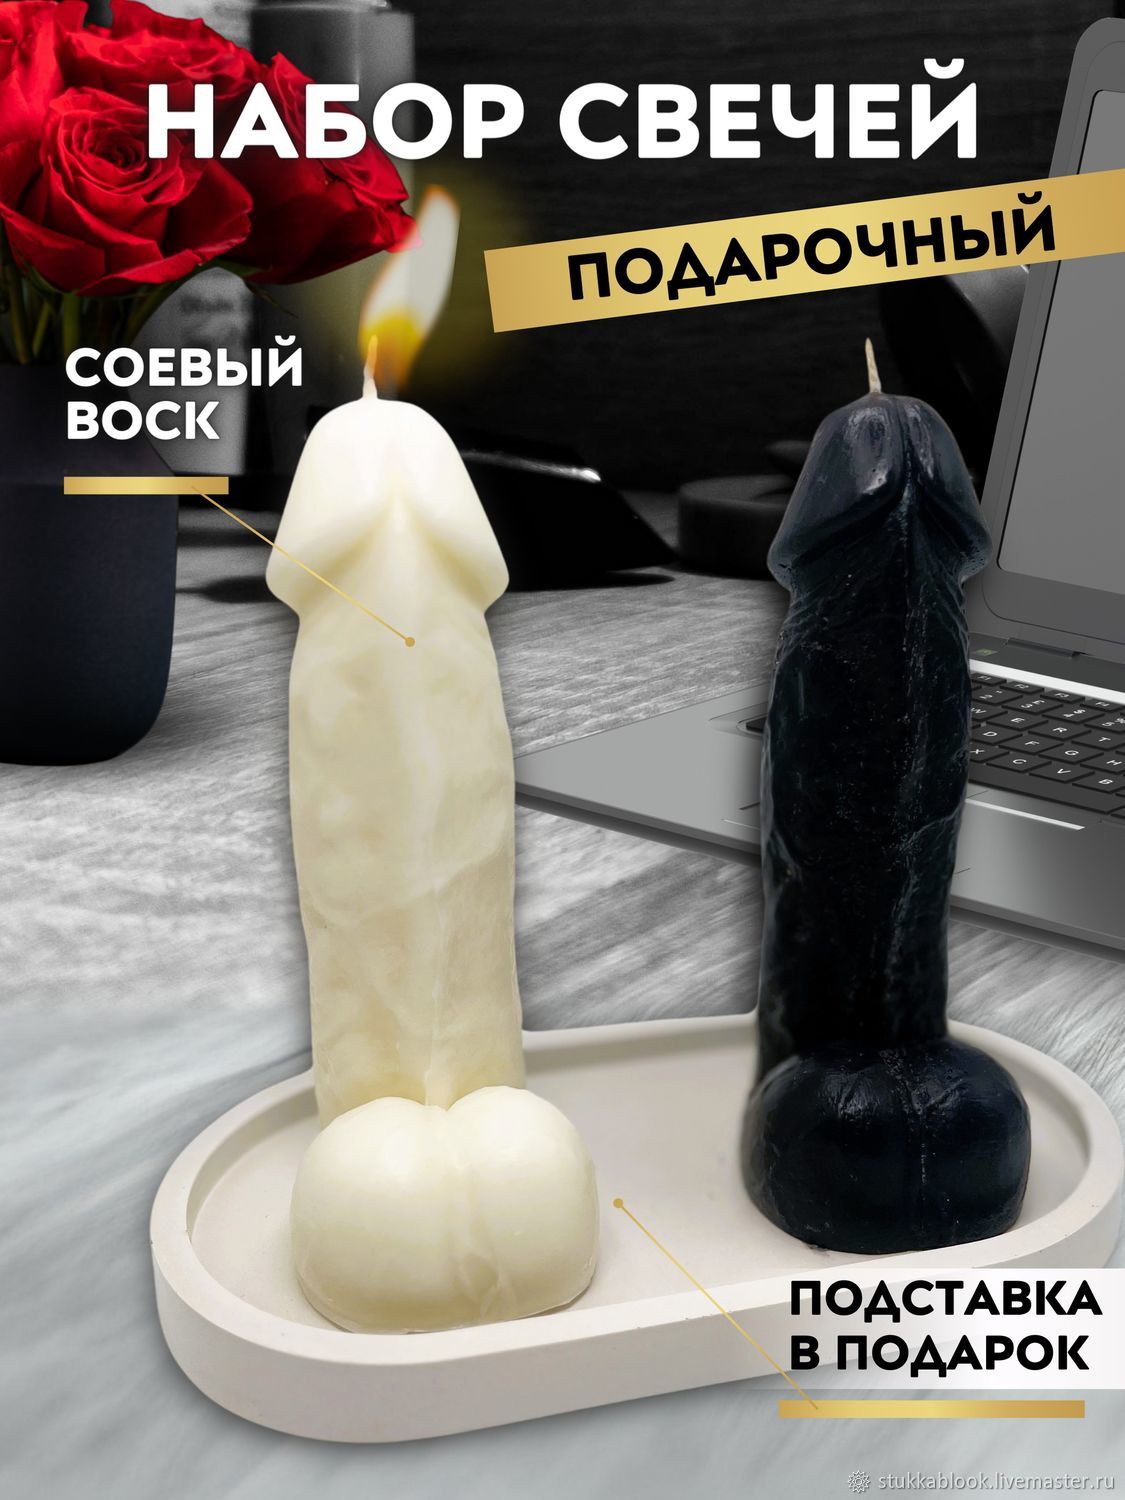 Секс со скалкой (53 фото) - секс и порно автонагаз55.рф